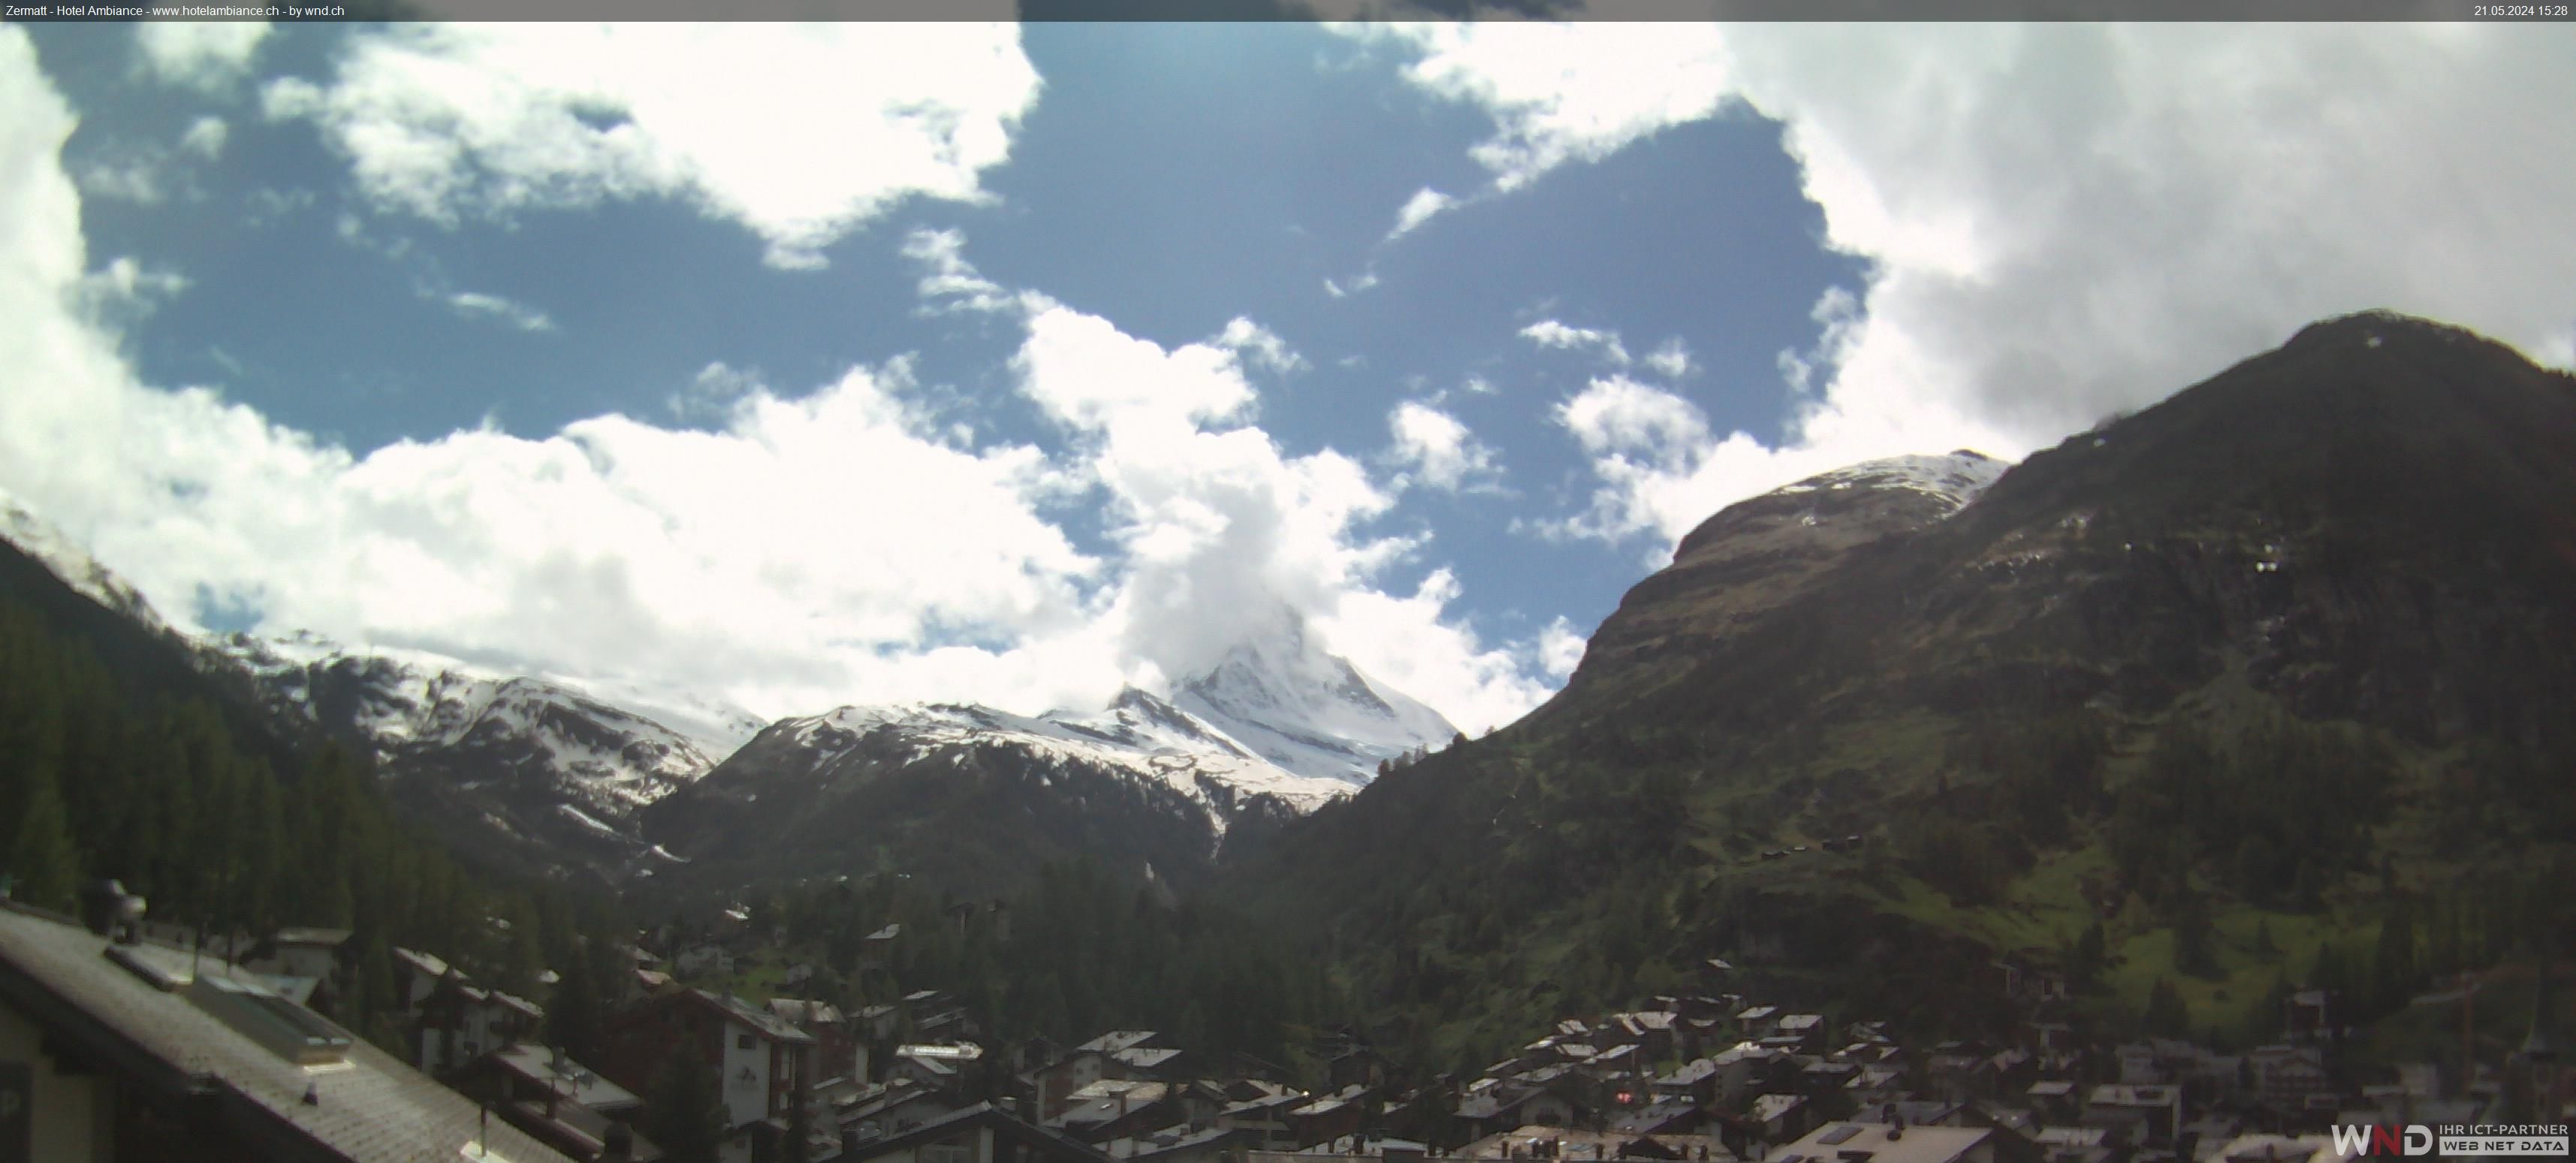 Zermatt: Blick auf das Matterhorn vom Balkon des Hotel Ambiance